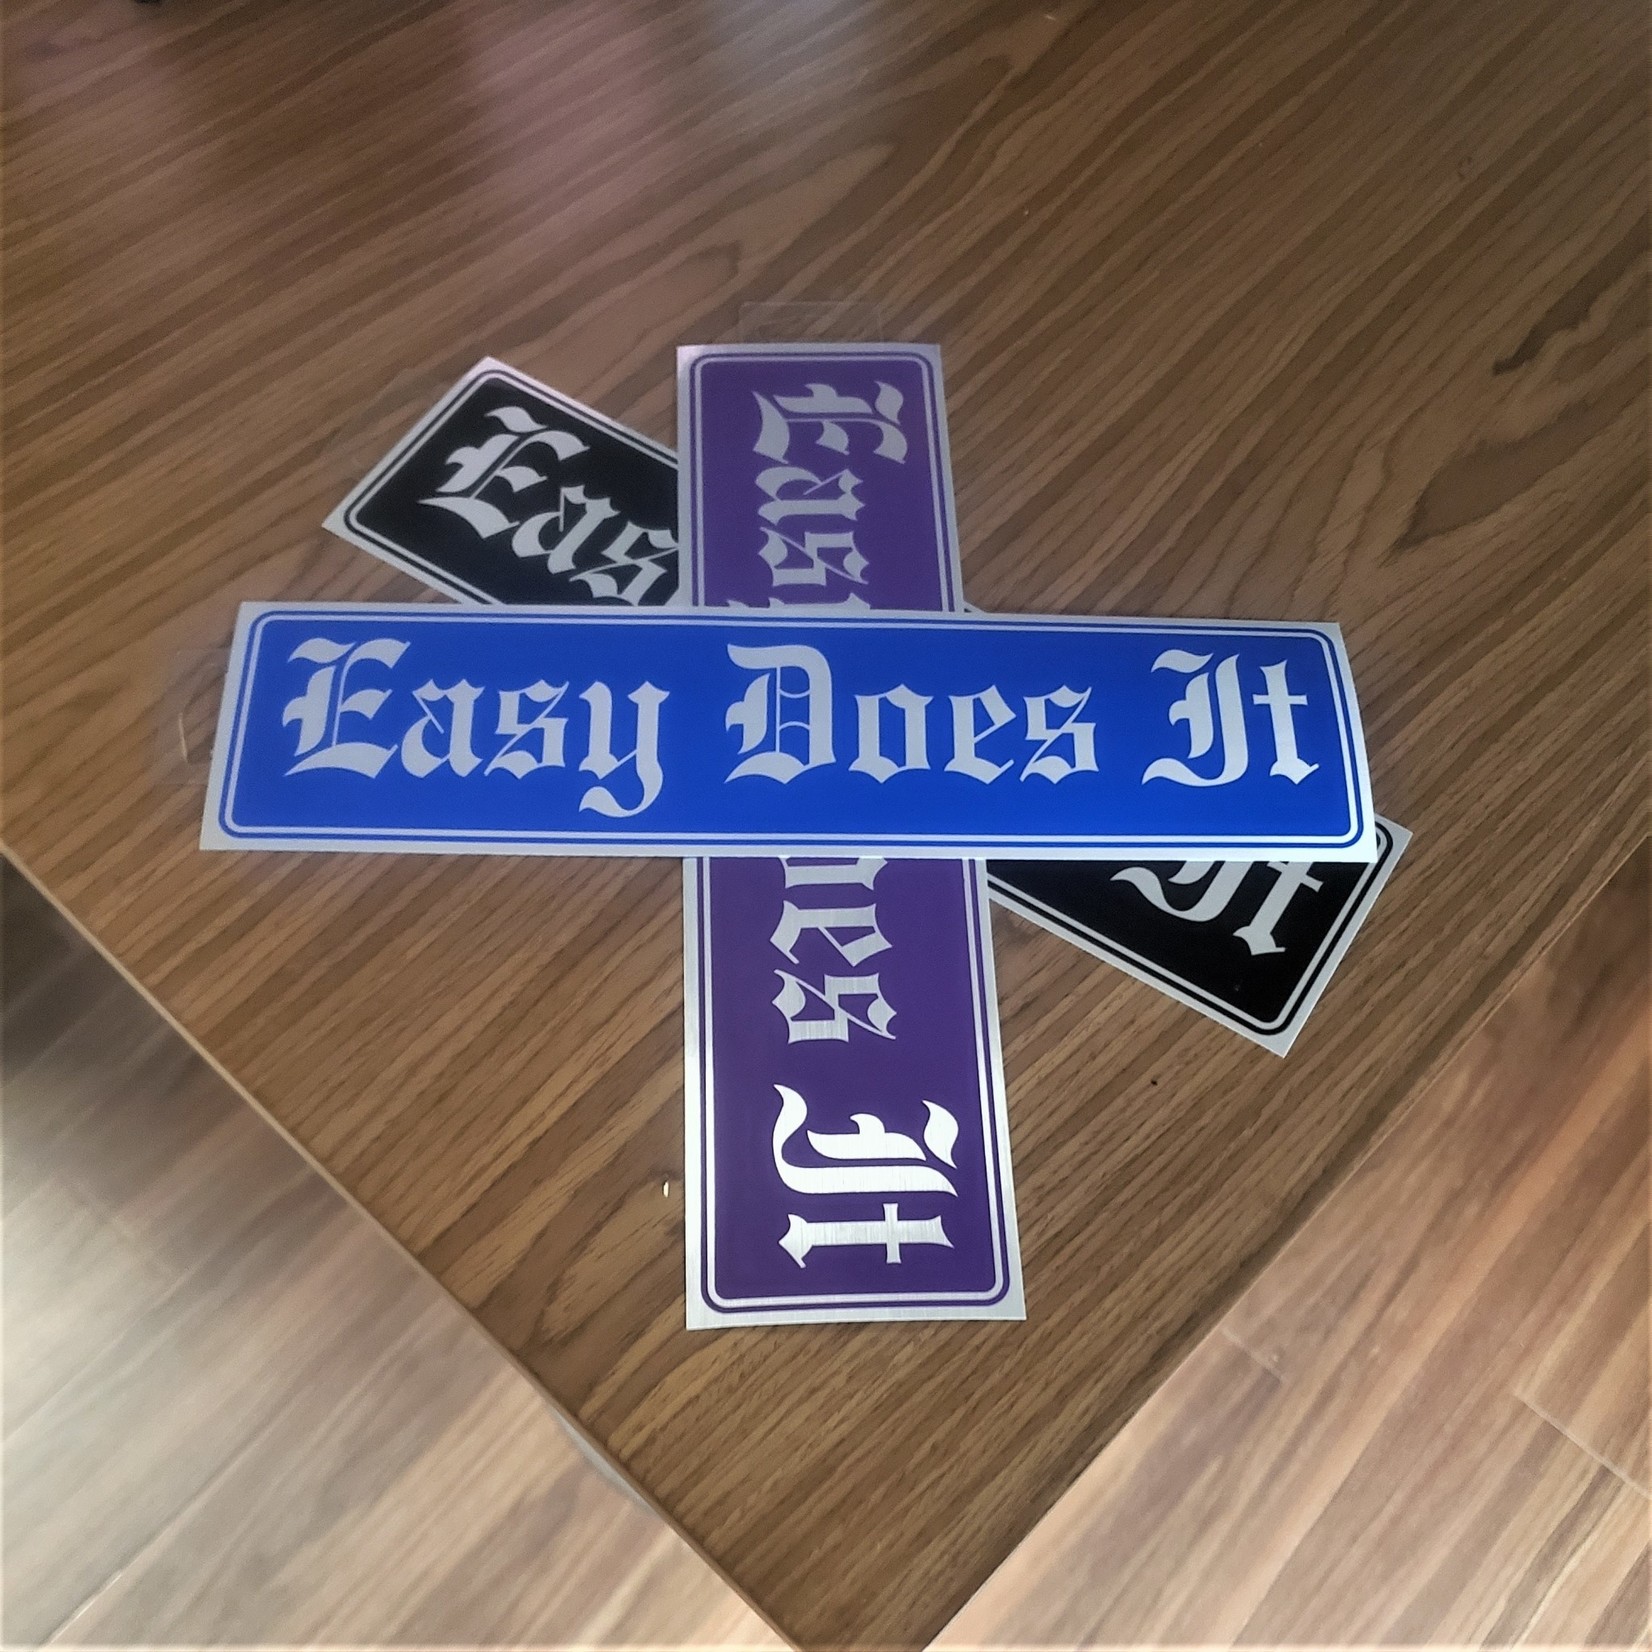 Easy Does It [Purple] Bumper Sticker